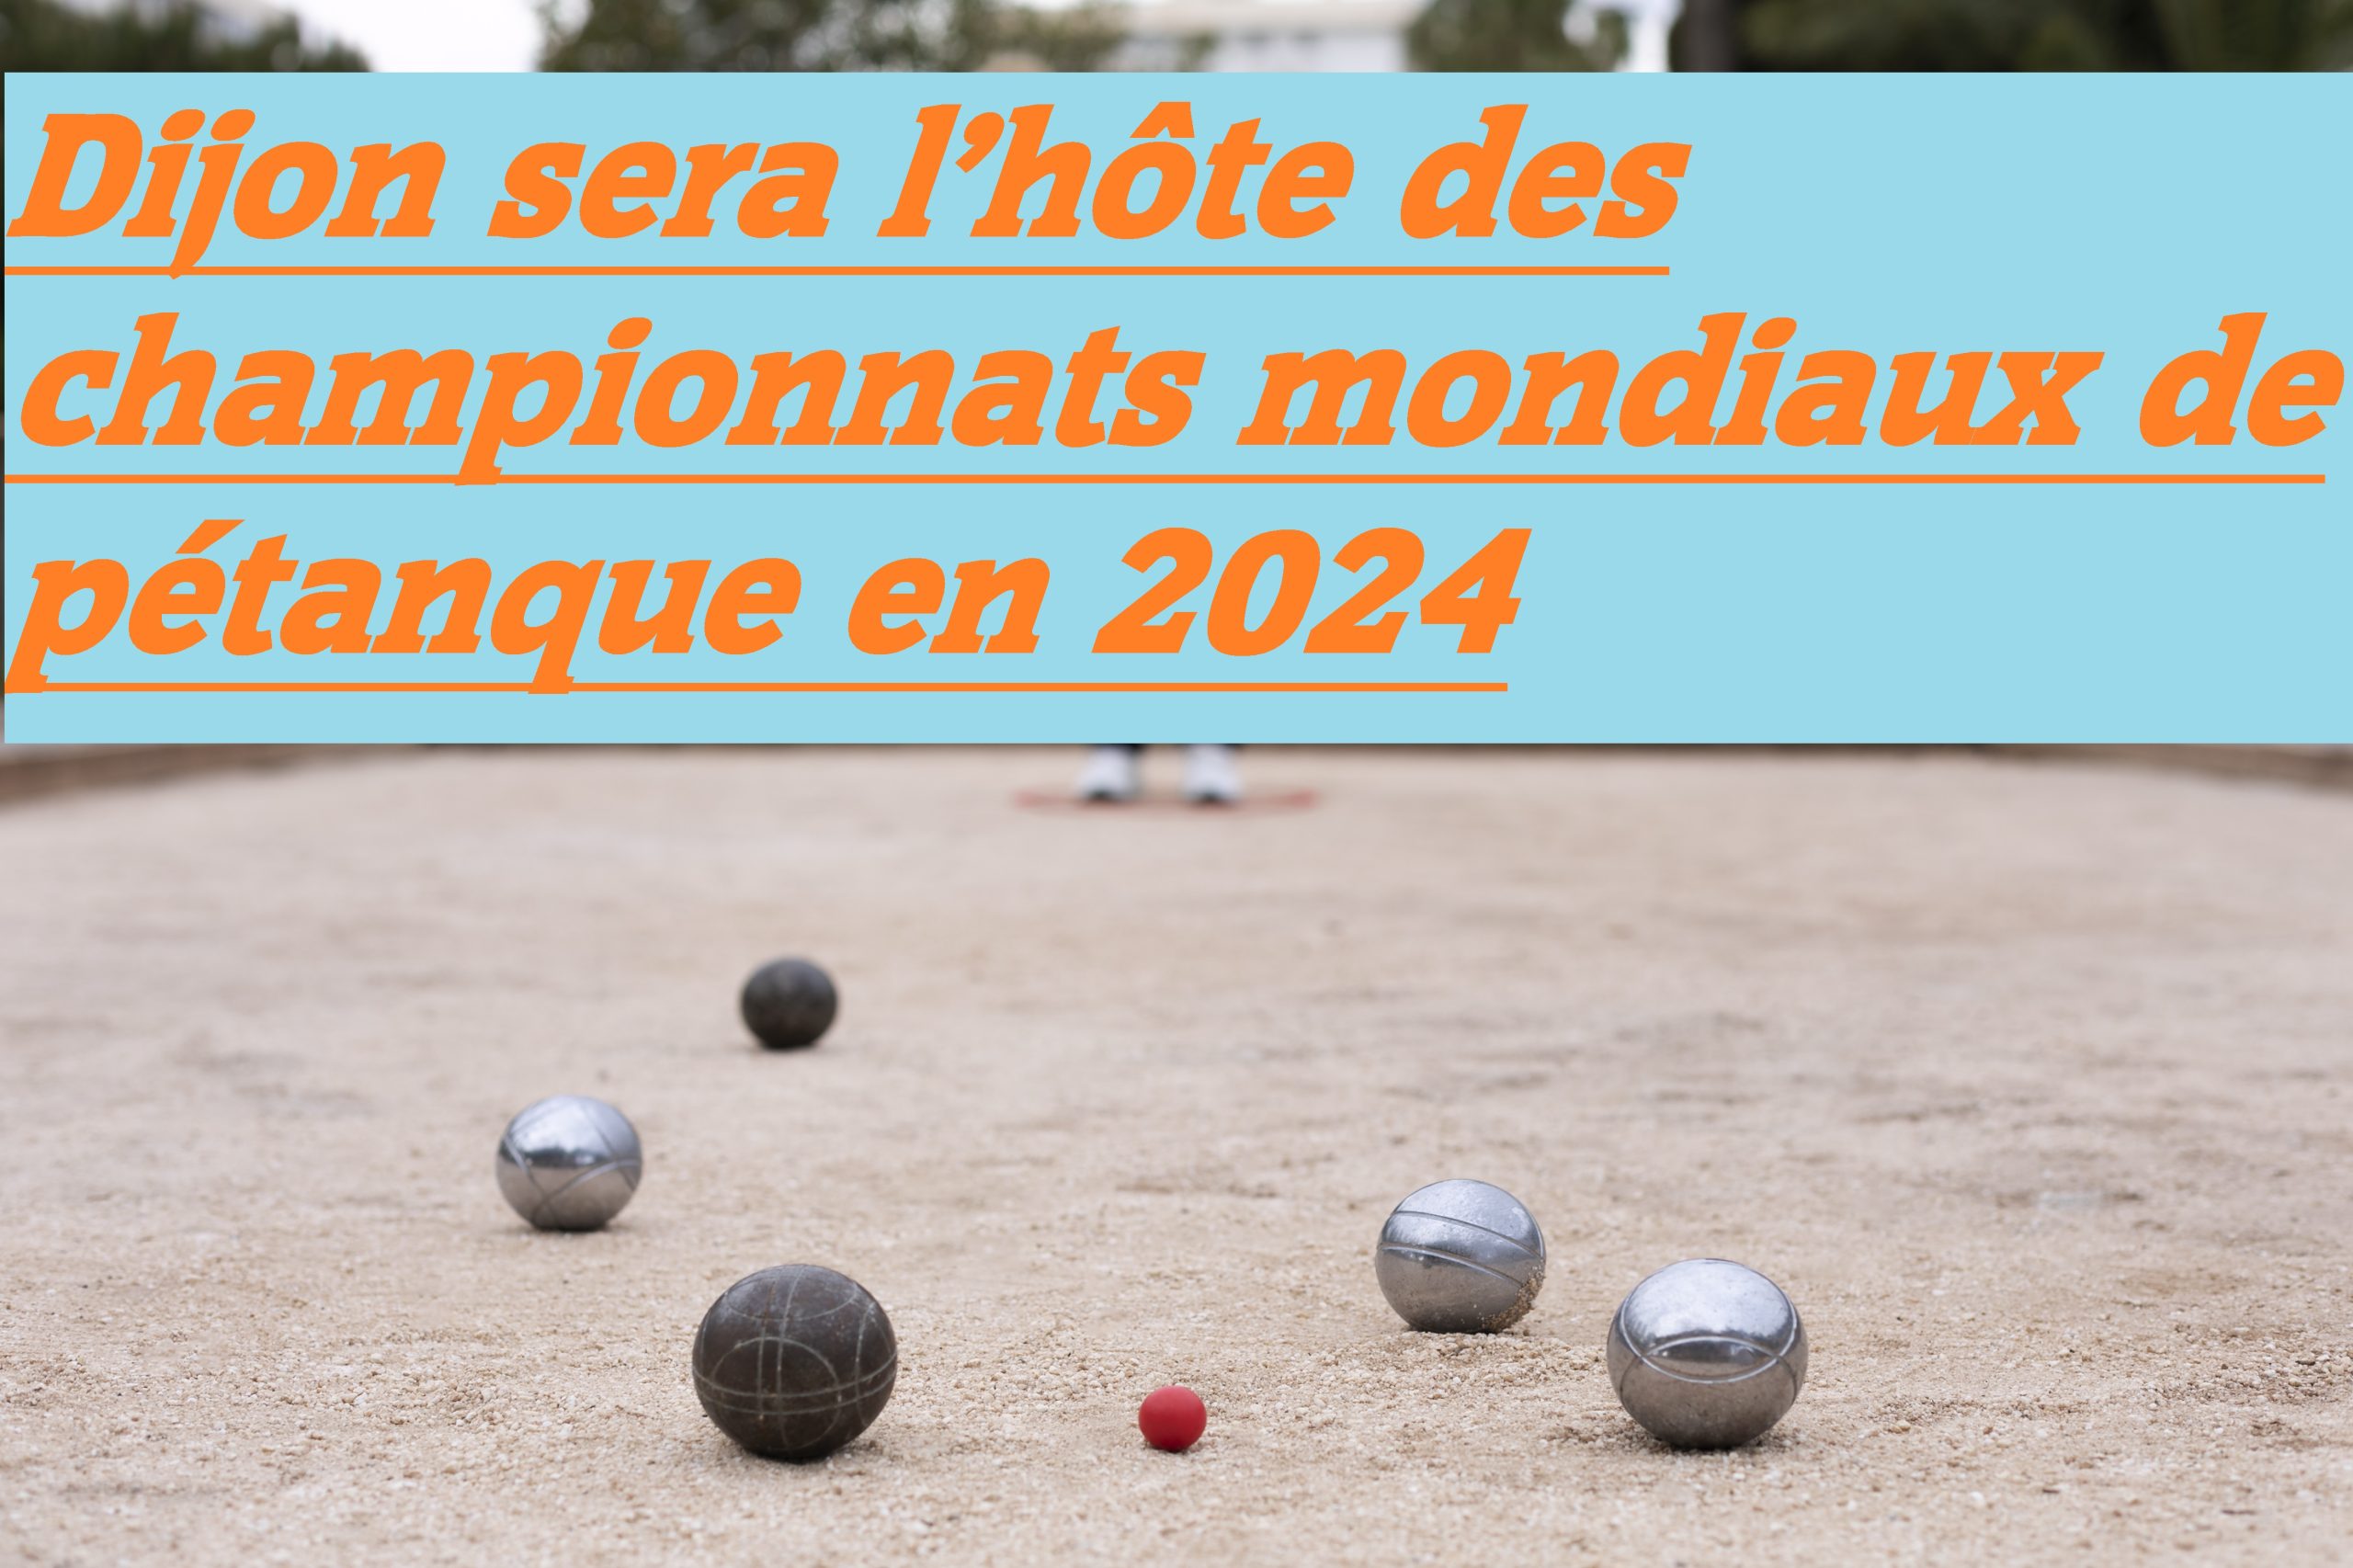 You are currently viewing Les Championnats mondiaux de pétanque en 2024 à Dijon